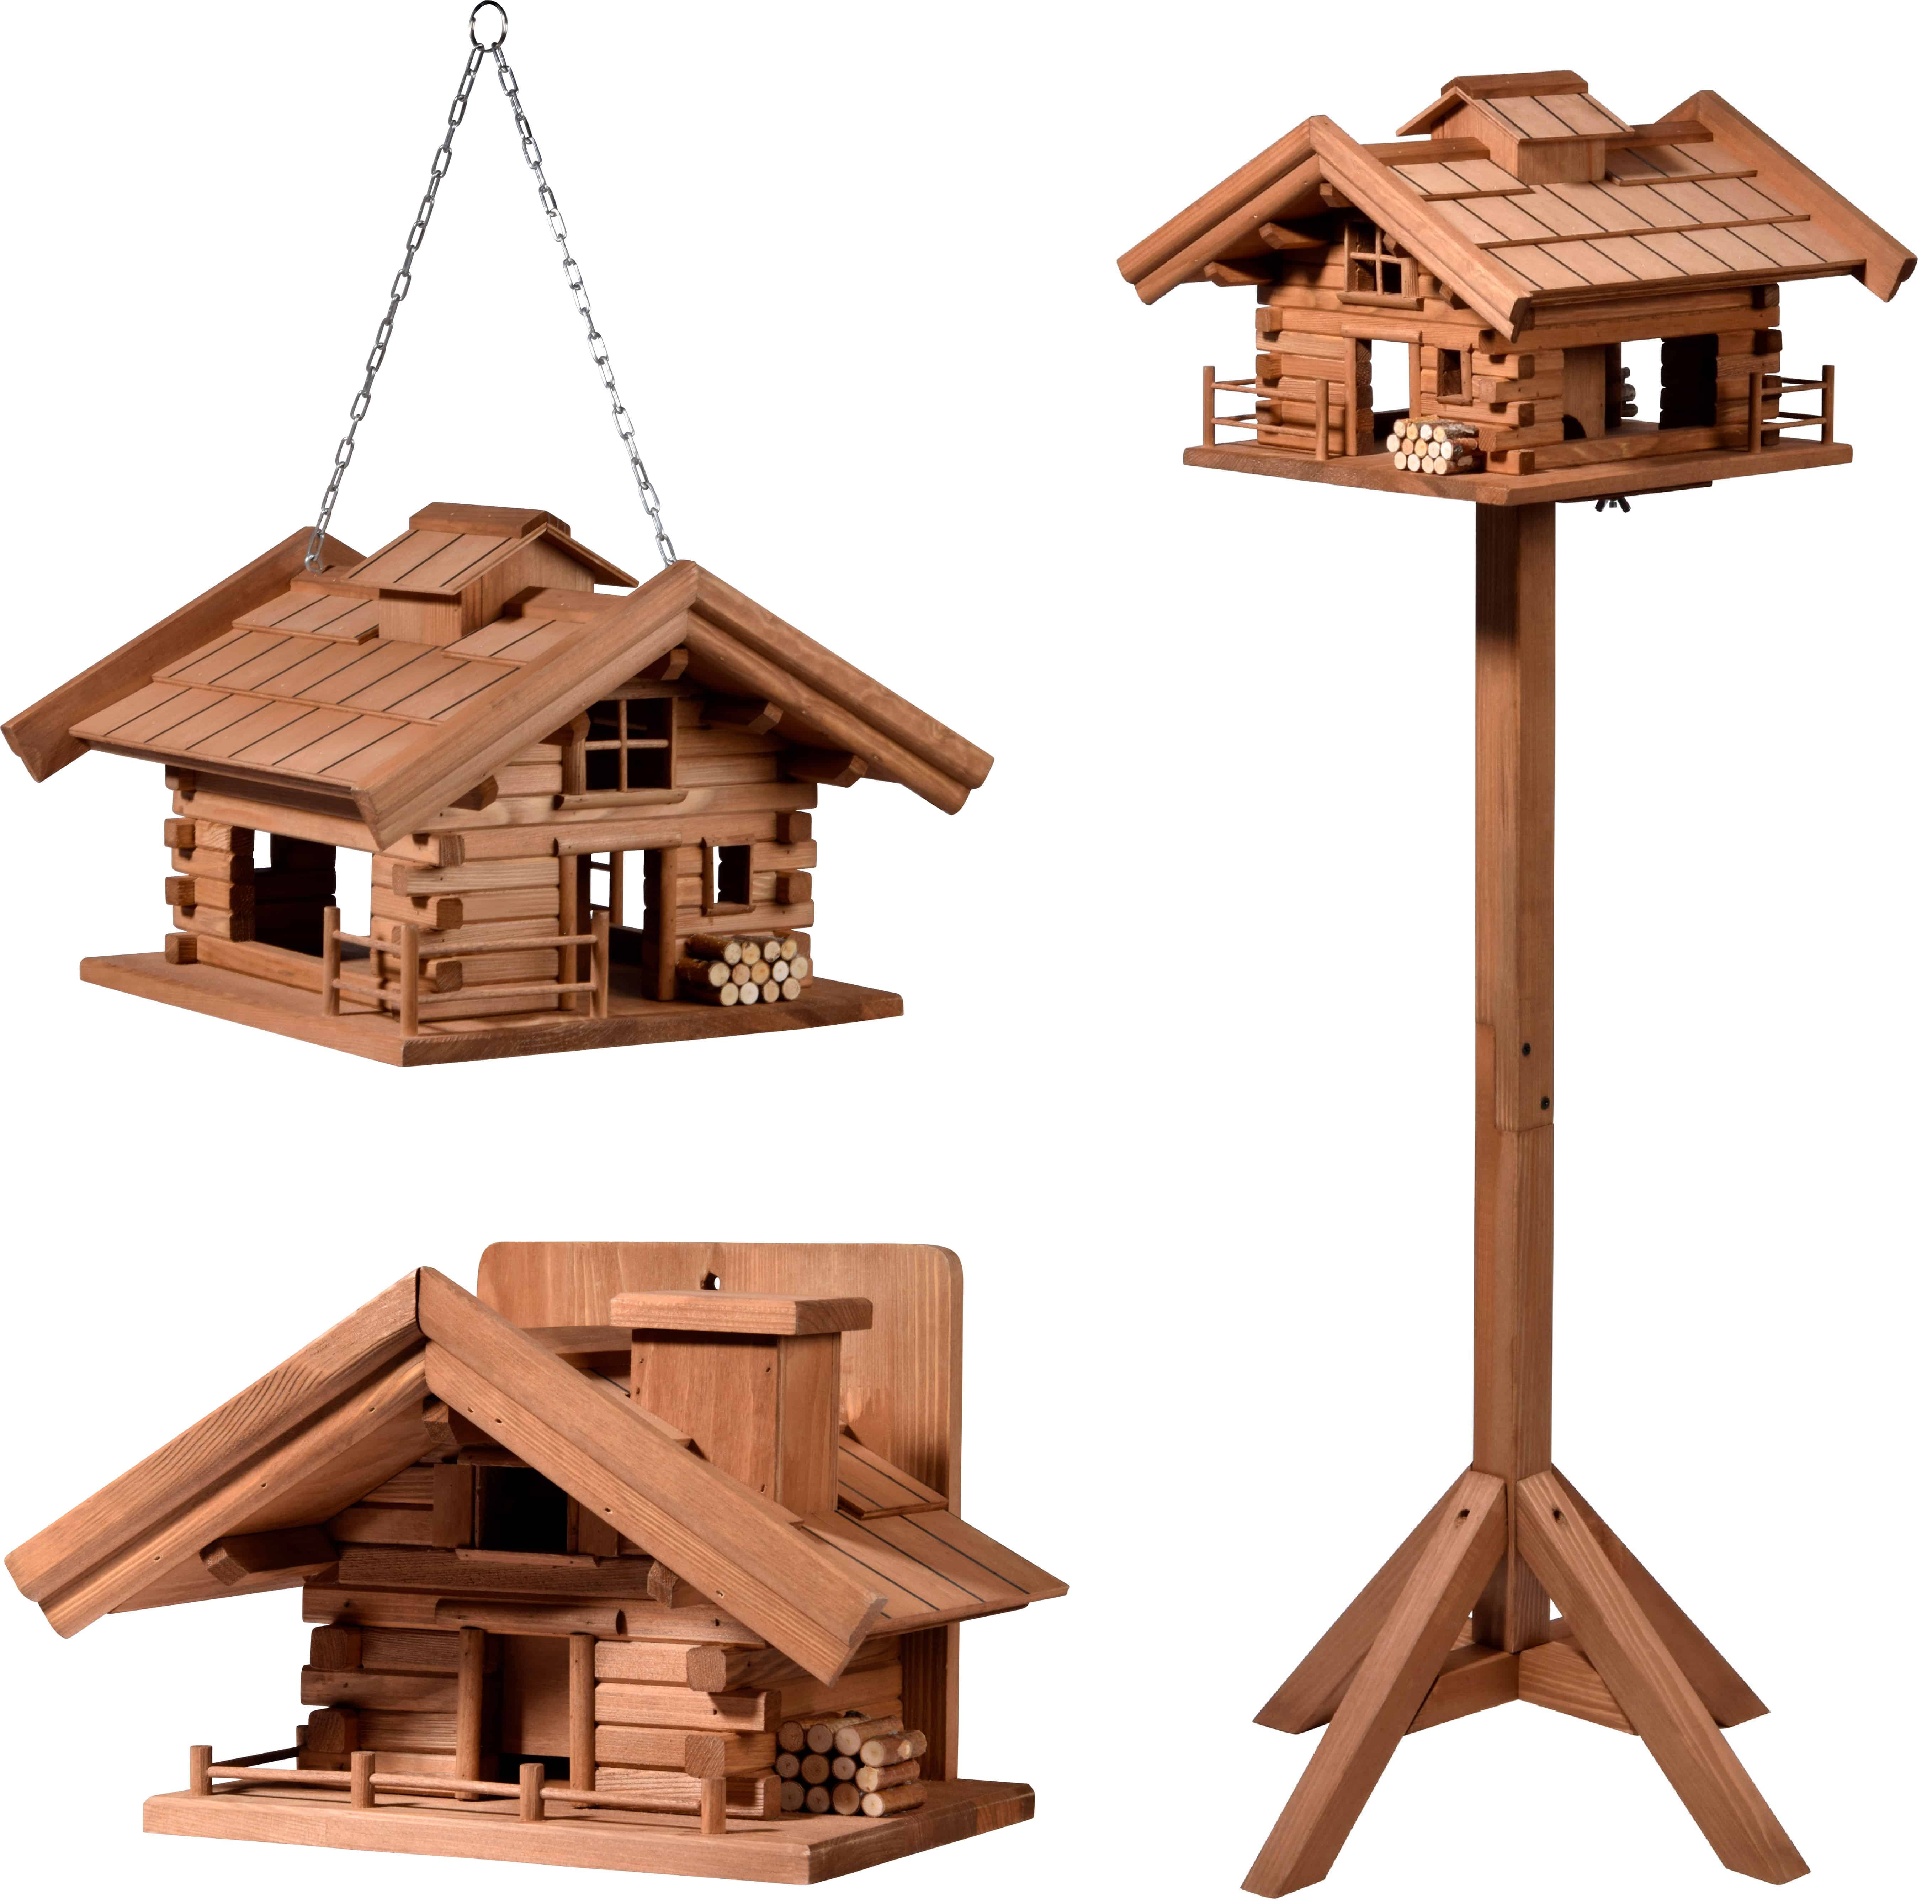 dobar Vogelhaus zum Aufhängen, mit grünem Bitumendach